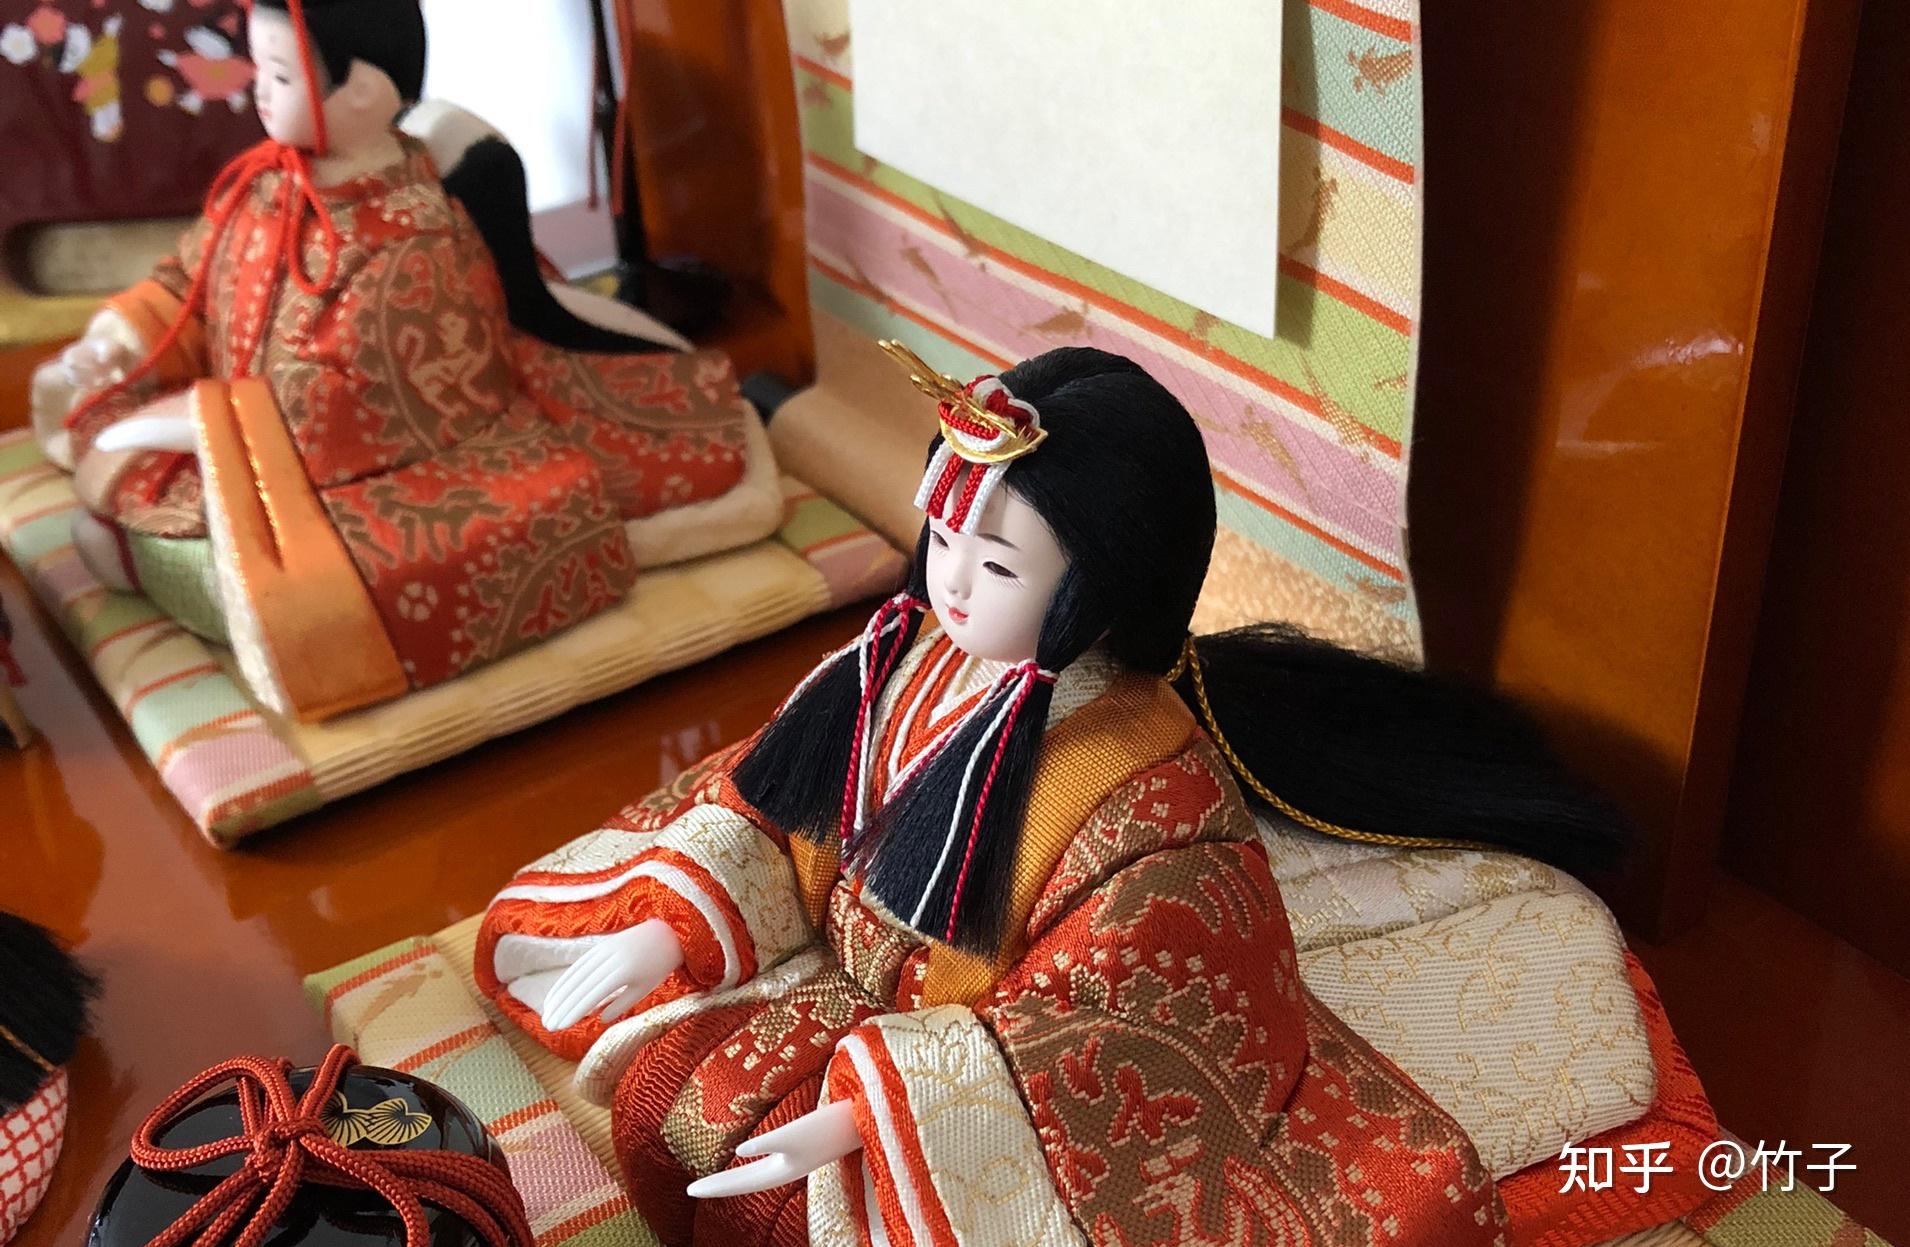 竹子家的女儿节人偶两年前竹子家也购入了高档的日本人偶,今年也要摆